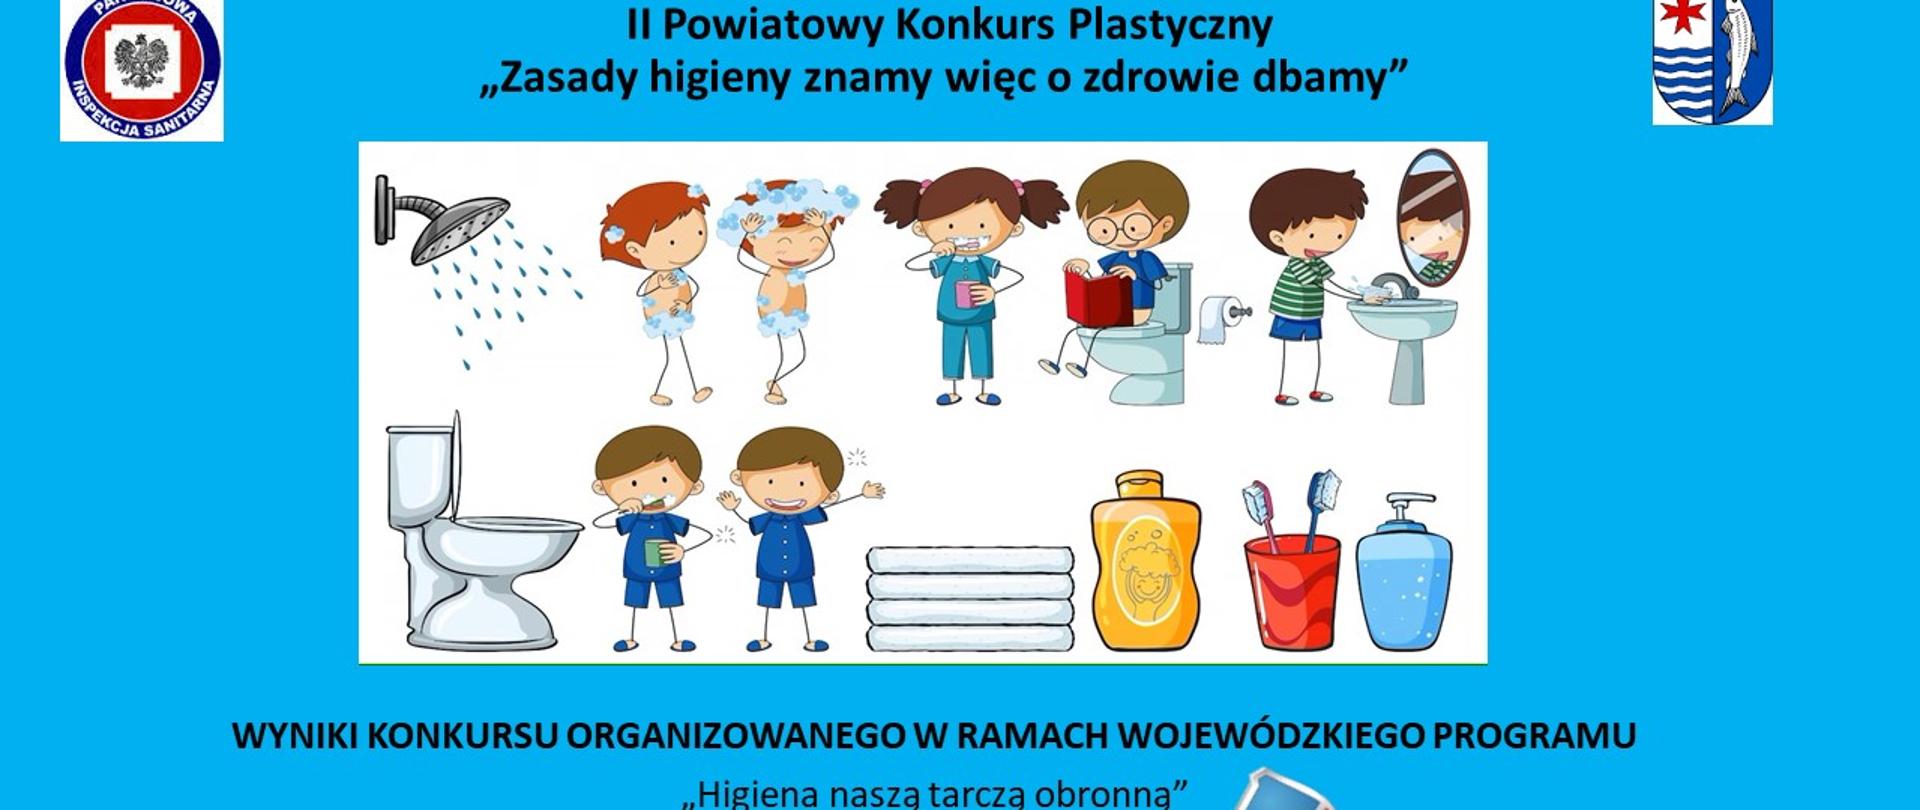 Wyniki II Powiatowego Konkursu Plastycznego pt. „ Zasady higieny znamy, więc o zdrowie dbamy”